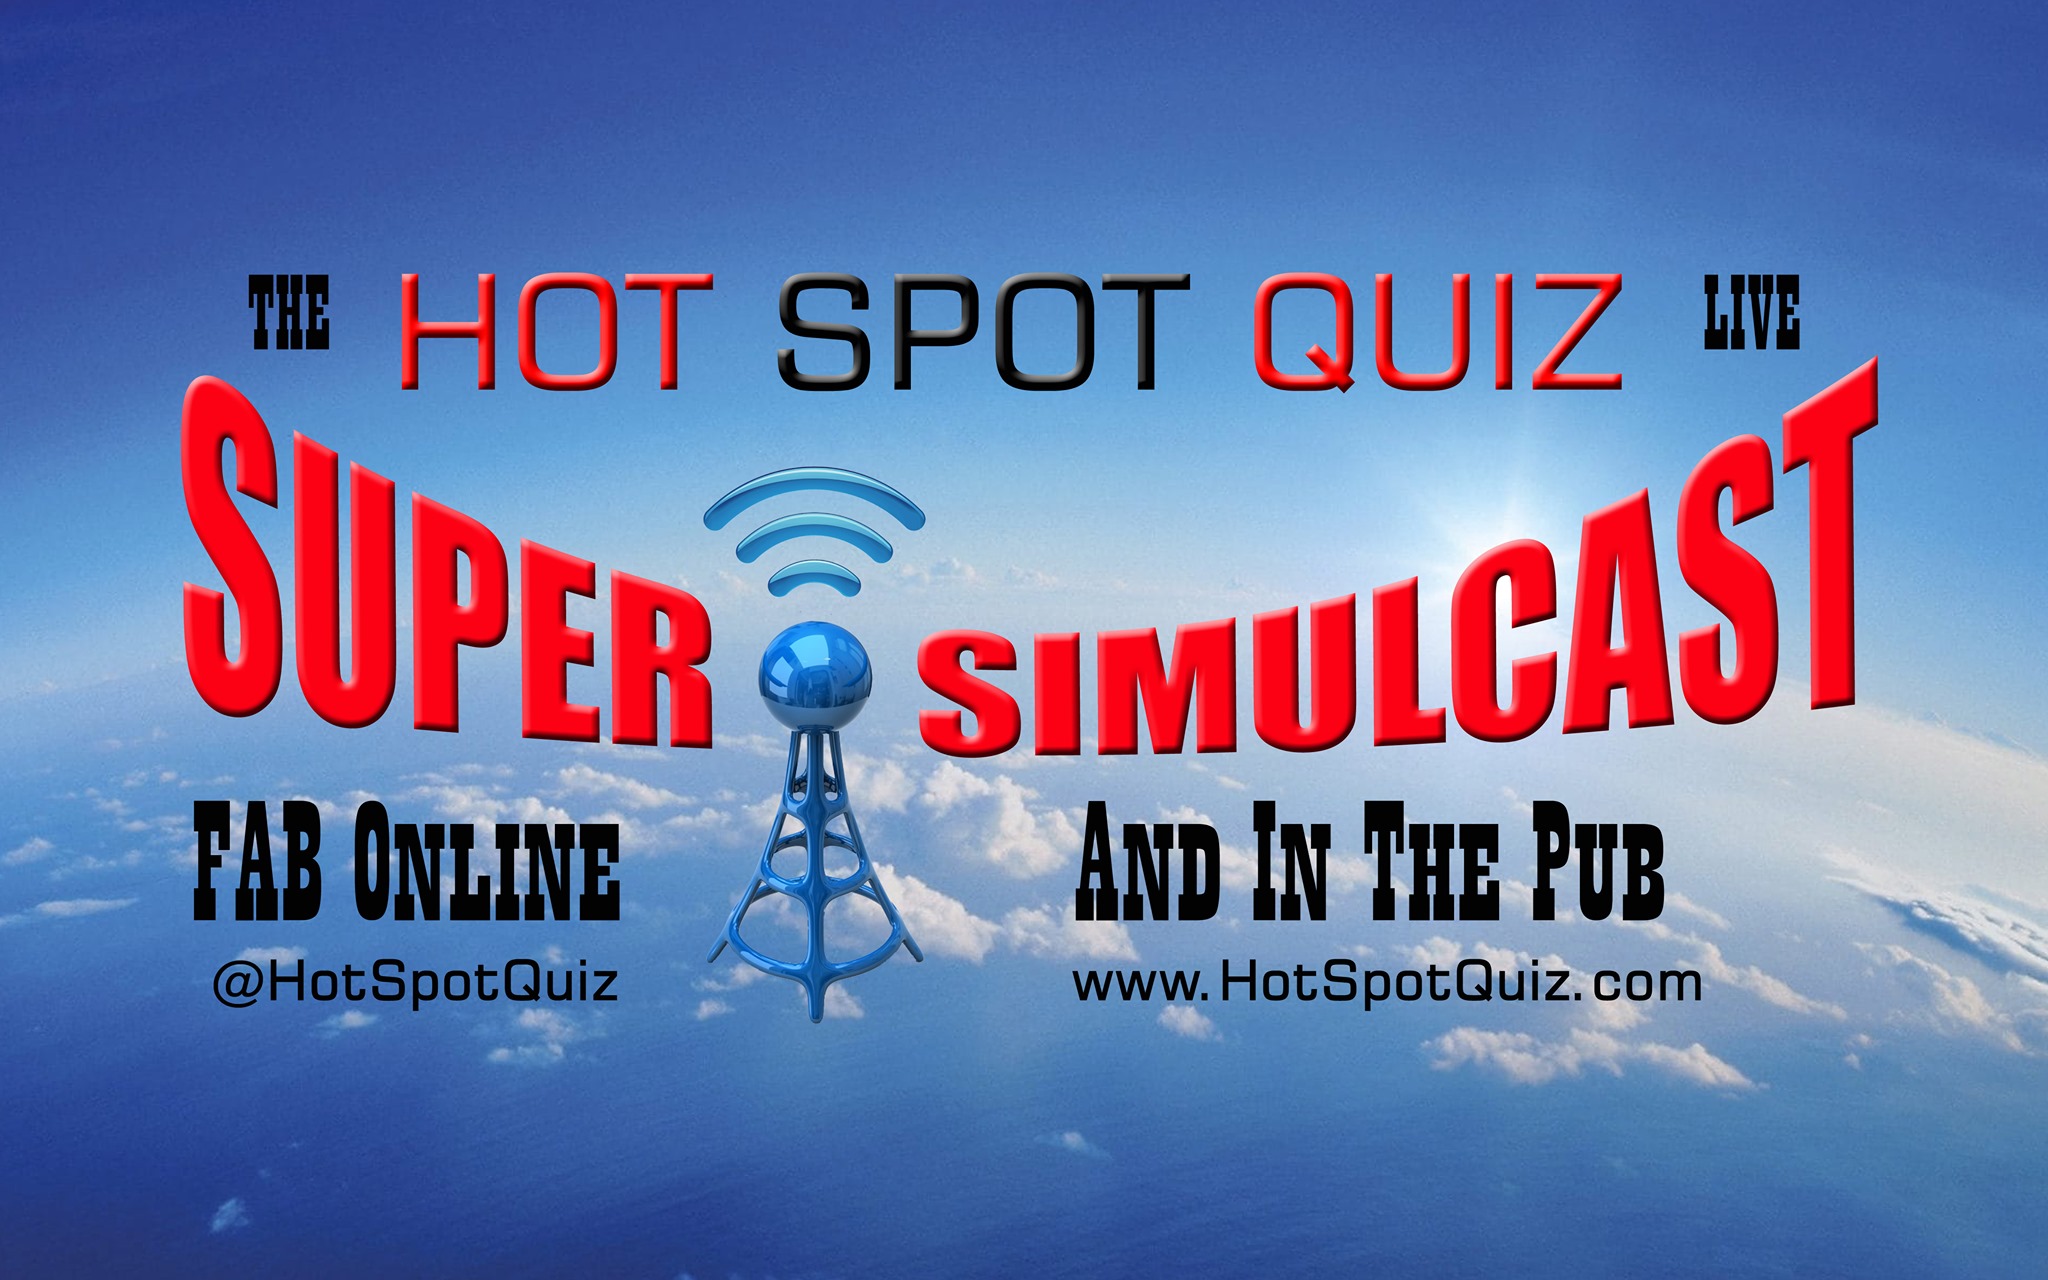 Super-Simulcast www.HotSpotQuiz.com